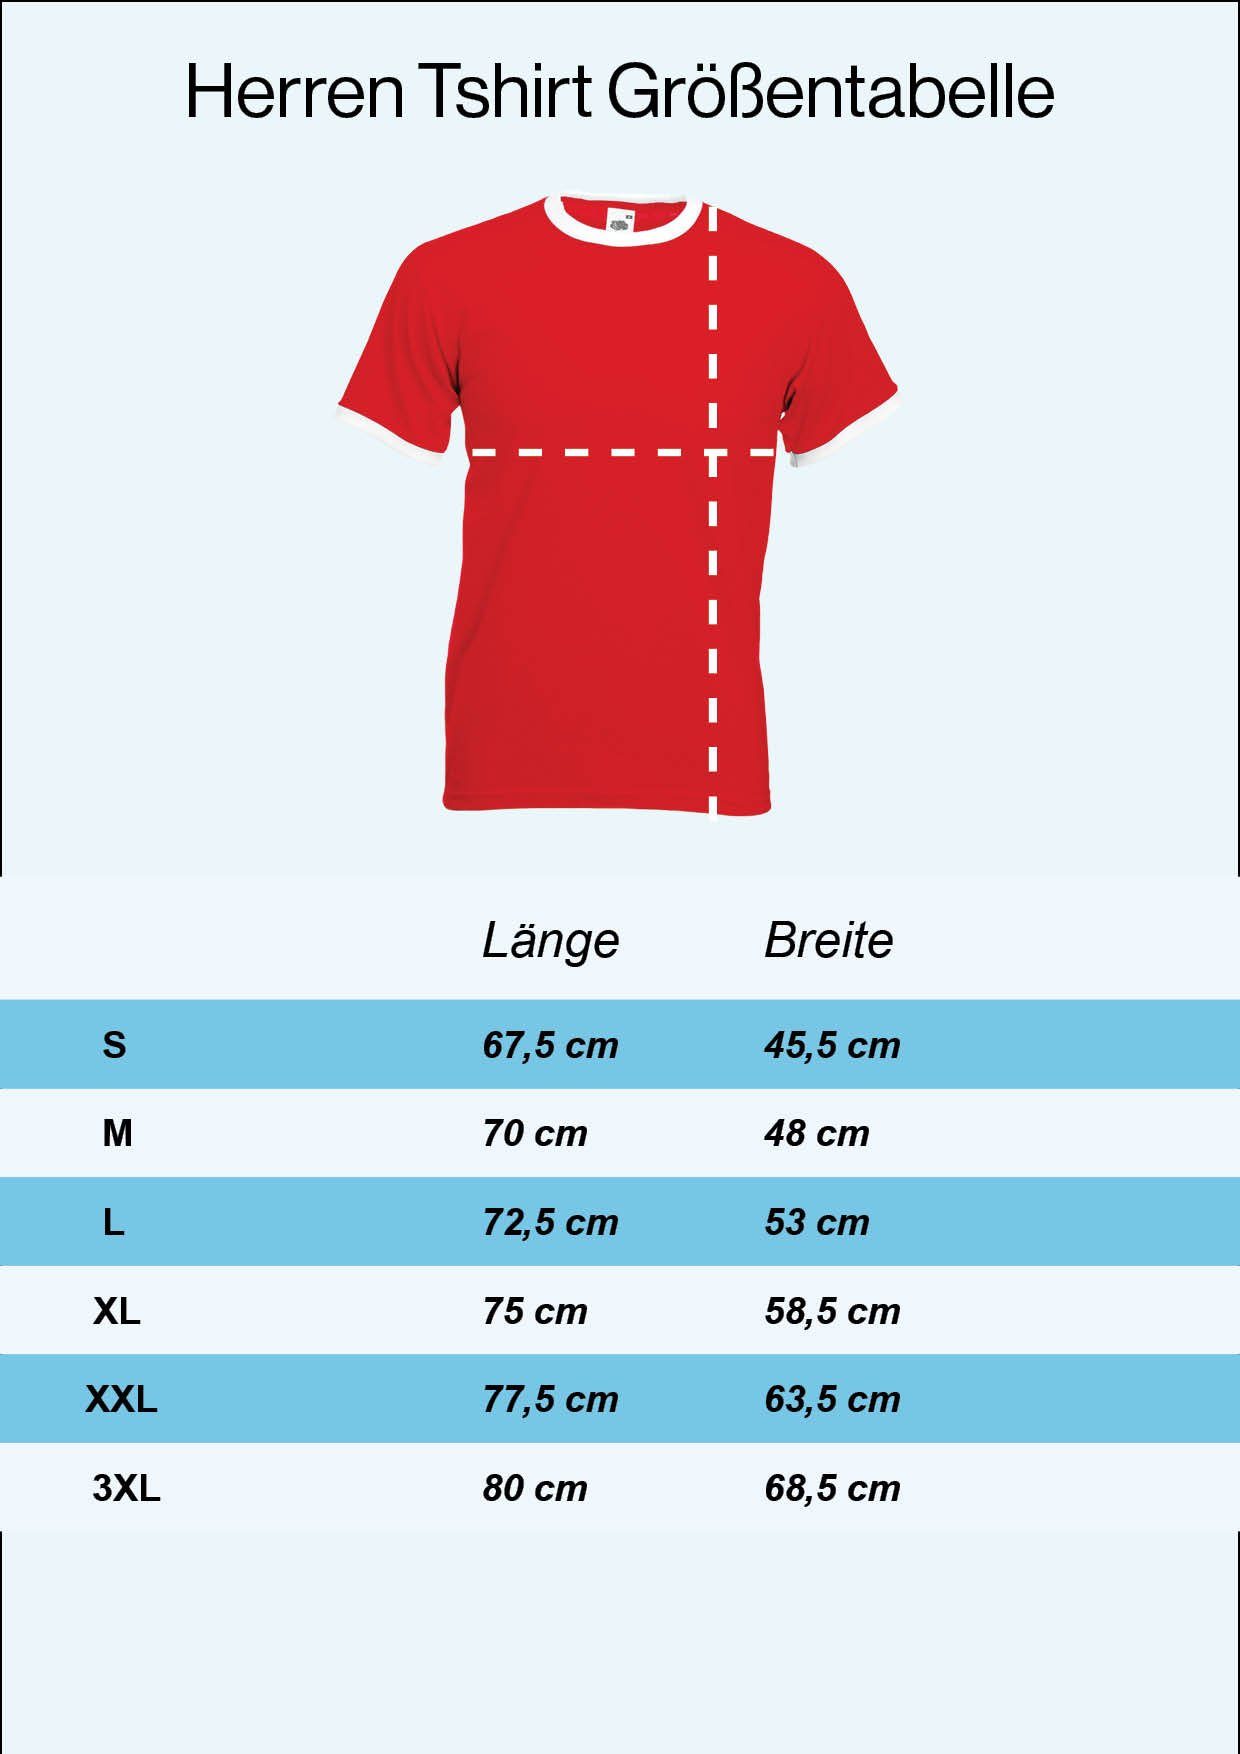 Youth Designz T-Shirt Motiv im Fußball Marokko Trikot mit trendigem T-Shirt Herren Look